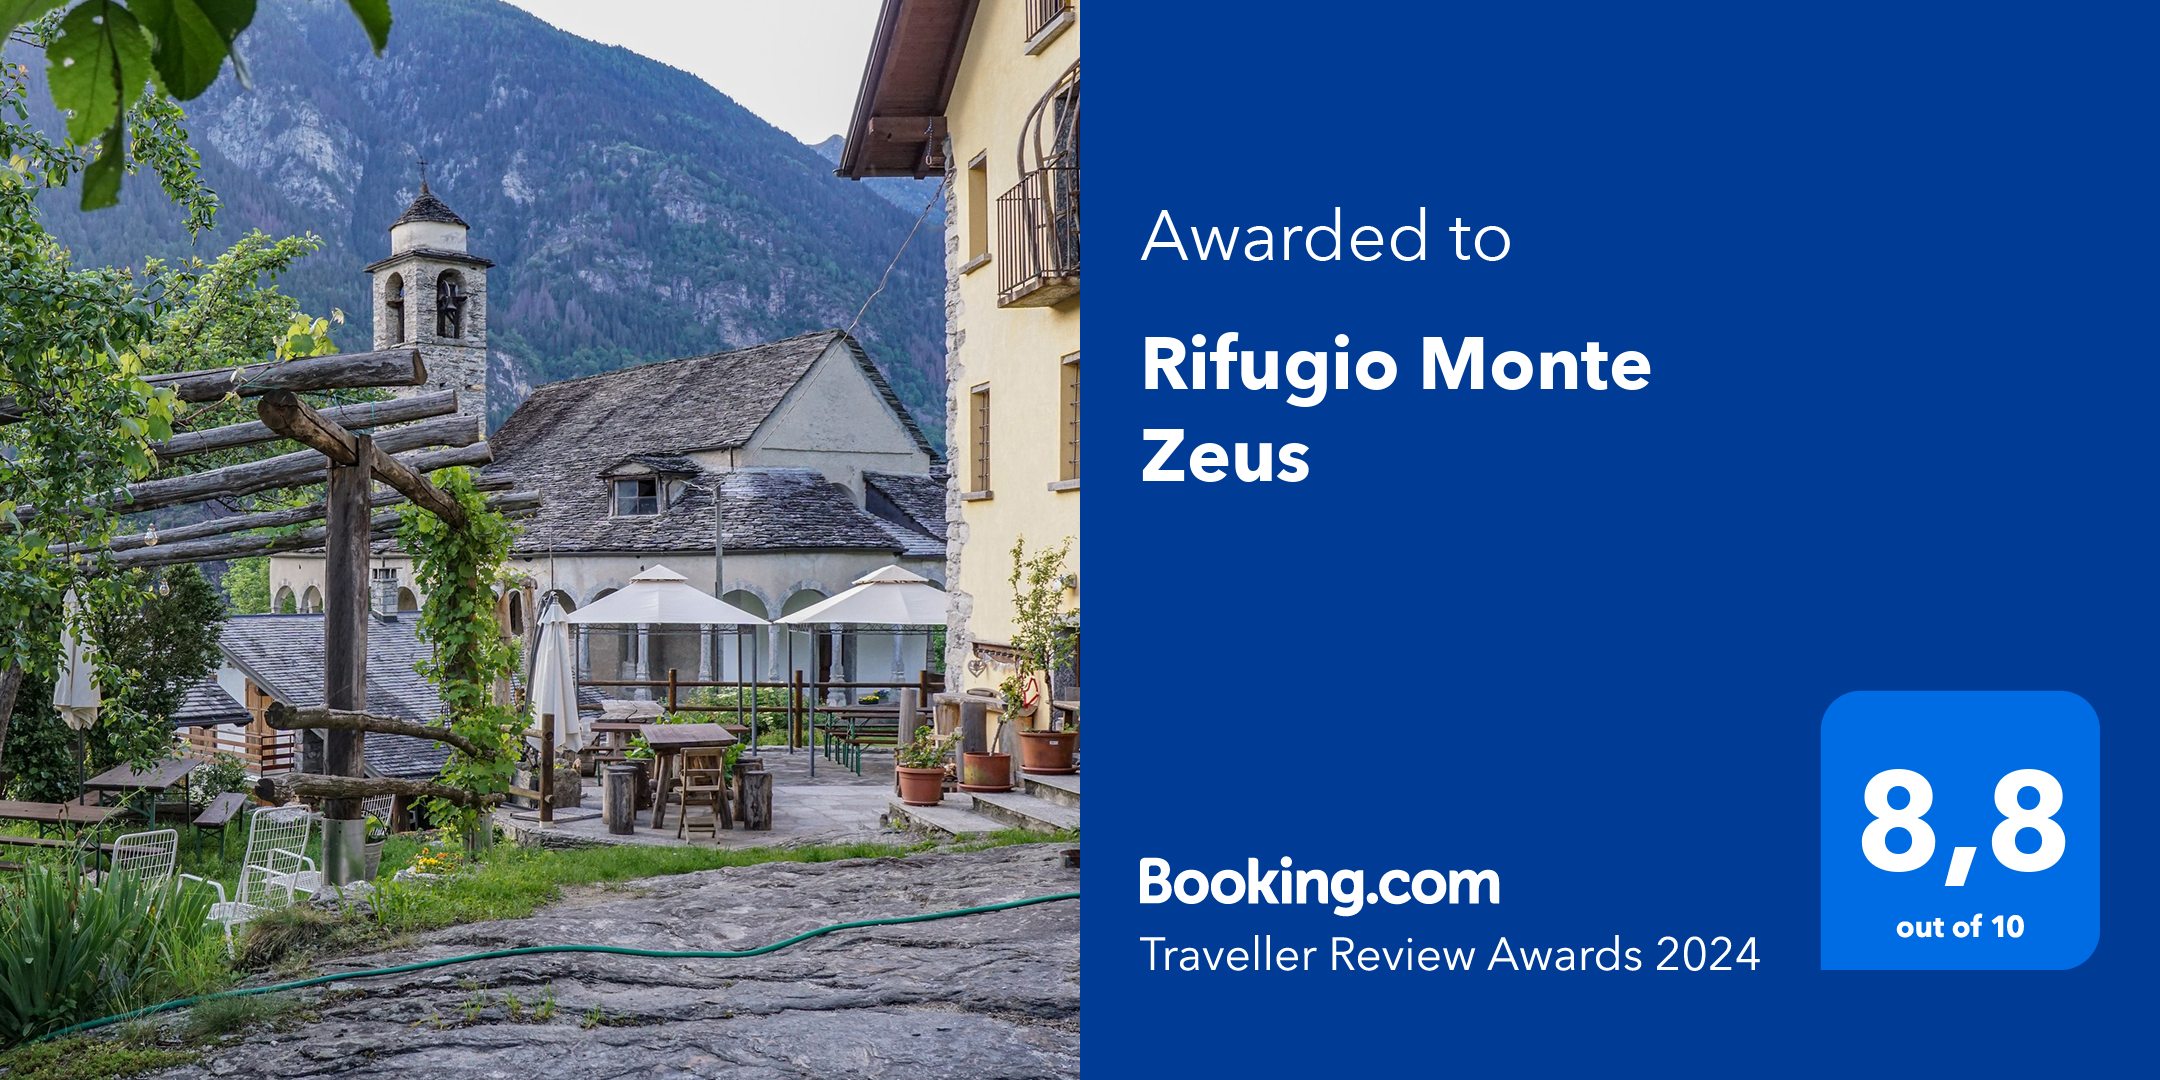 Per il quarto anno Monte Zeus ha vinto il Traveller Review Awards di Booking.com